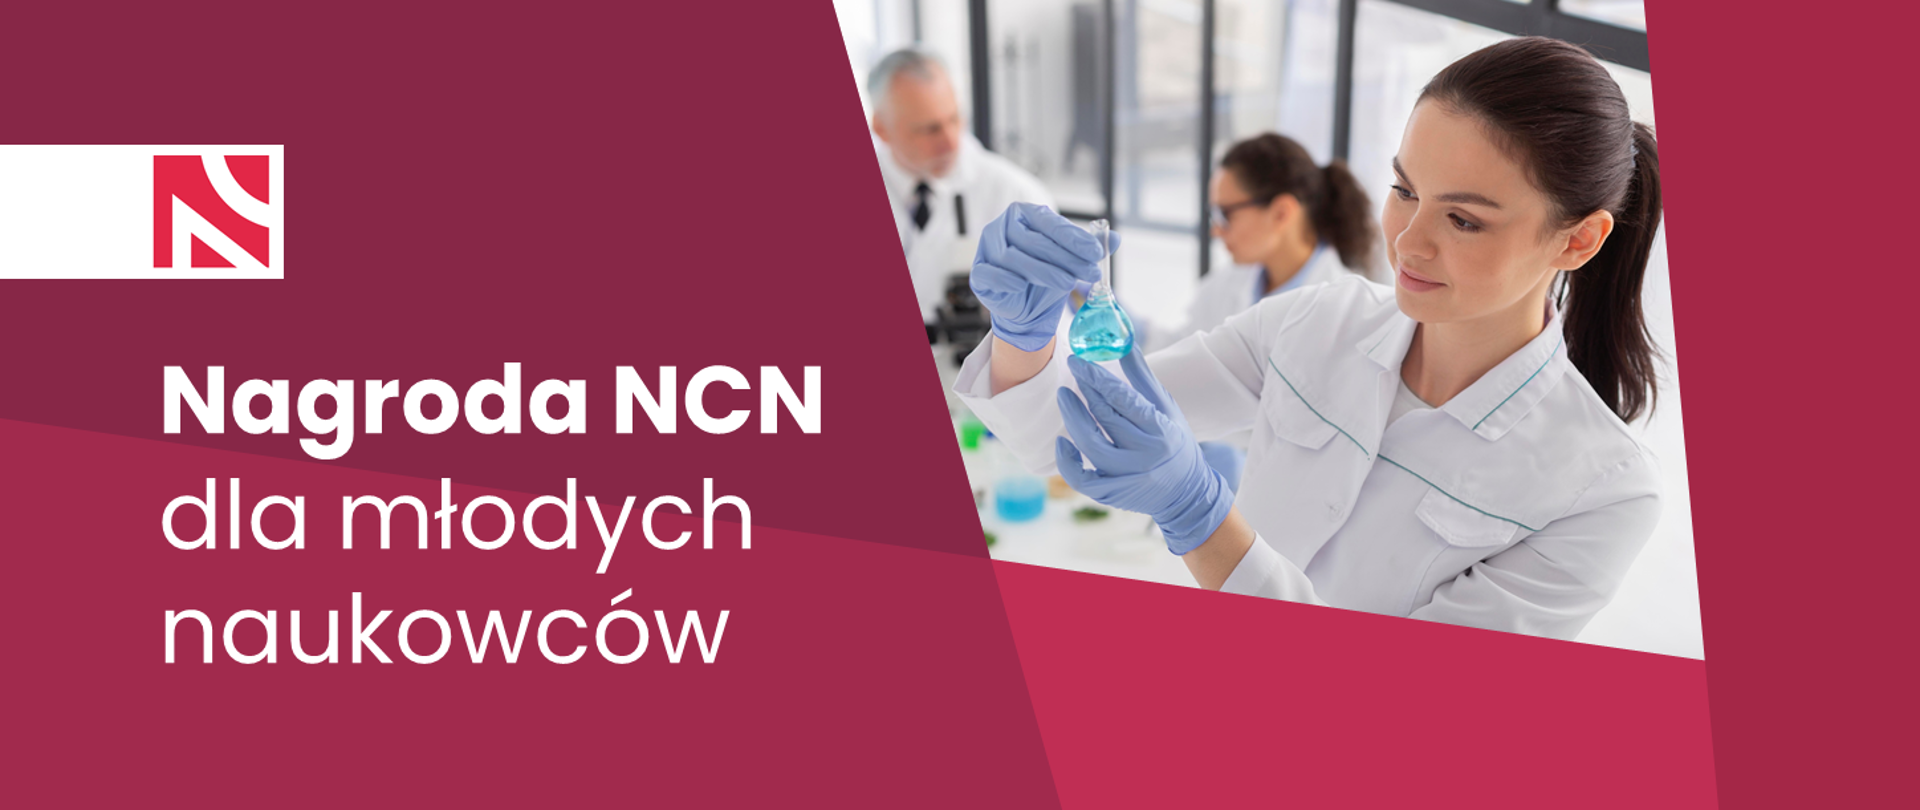 Grafika - na czerwonym tle logo NCN, napis Nagroda NCN dla młodych naukowców i zdjęcie młodej kobiety w laboratoryjnym fartuchu.